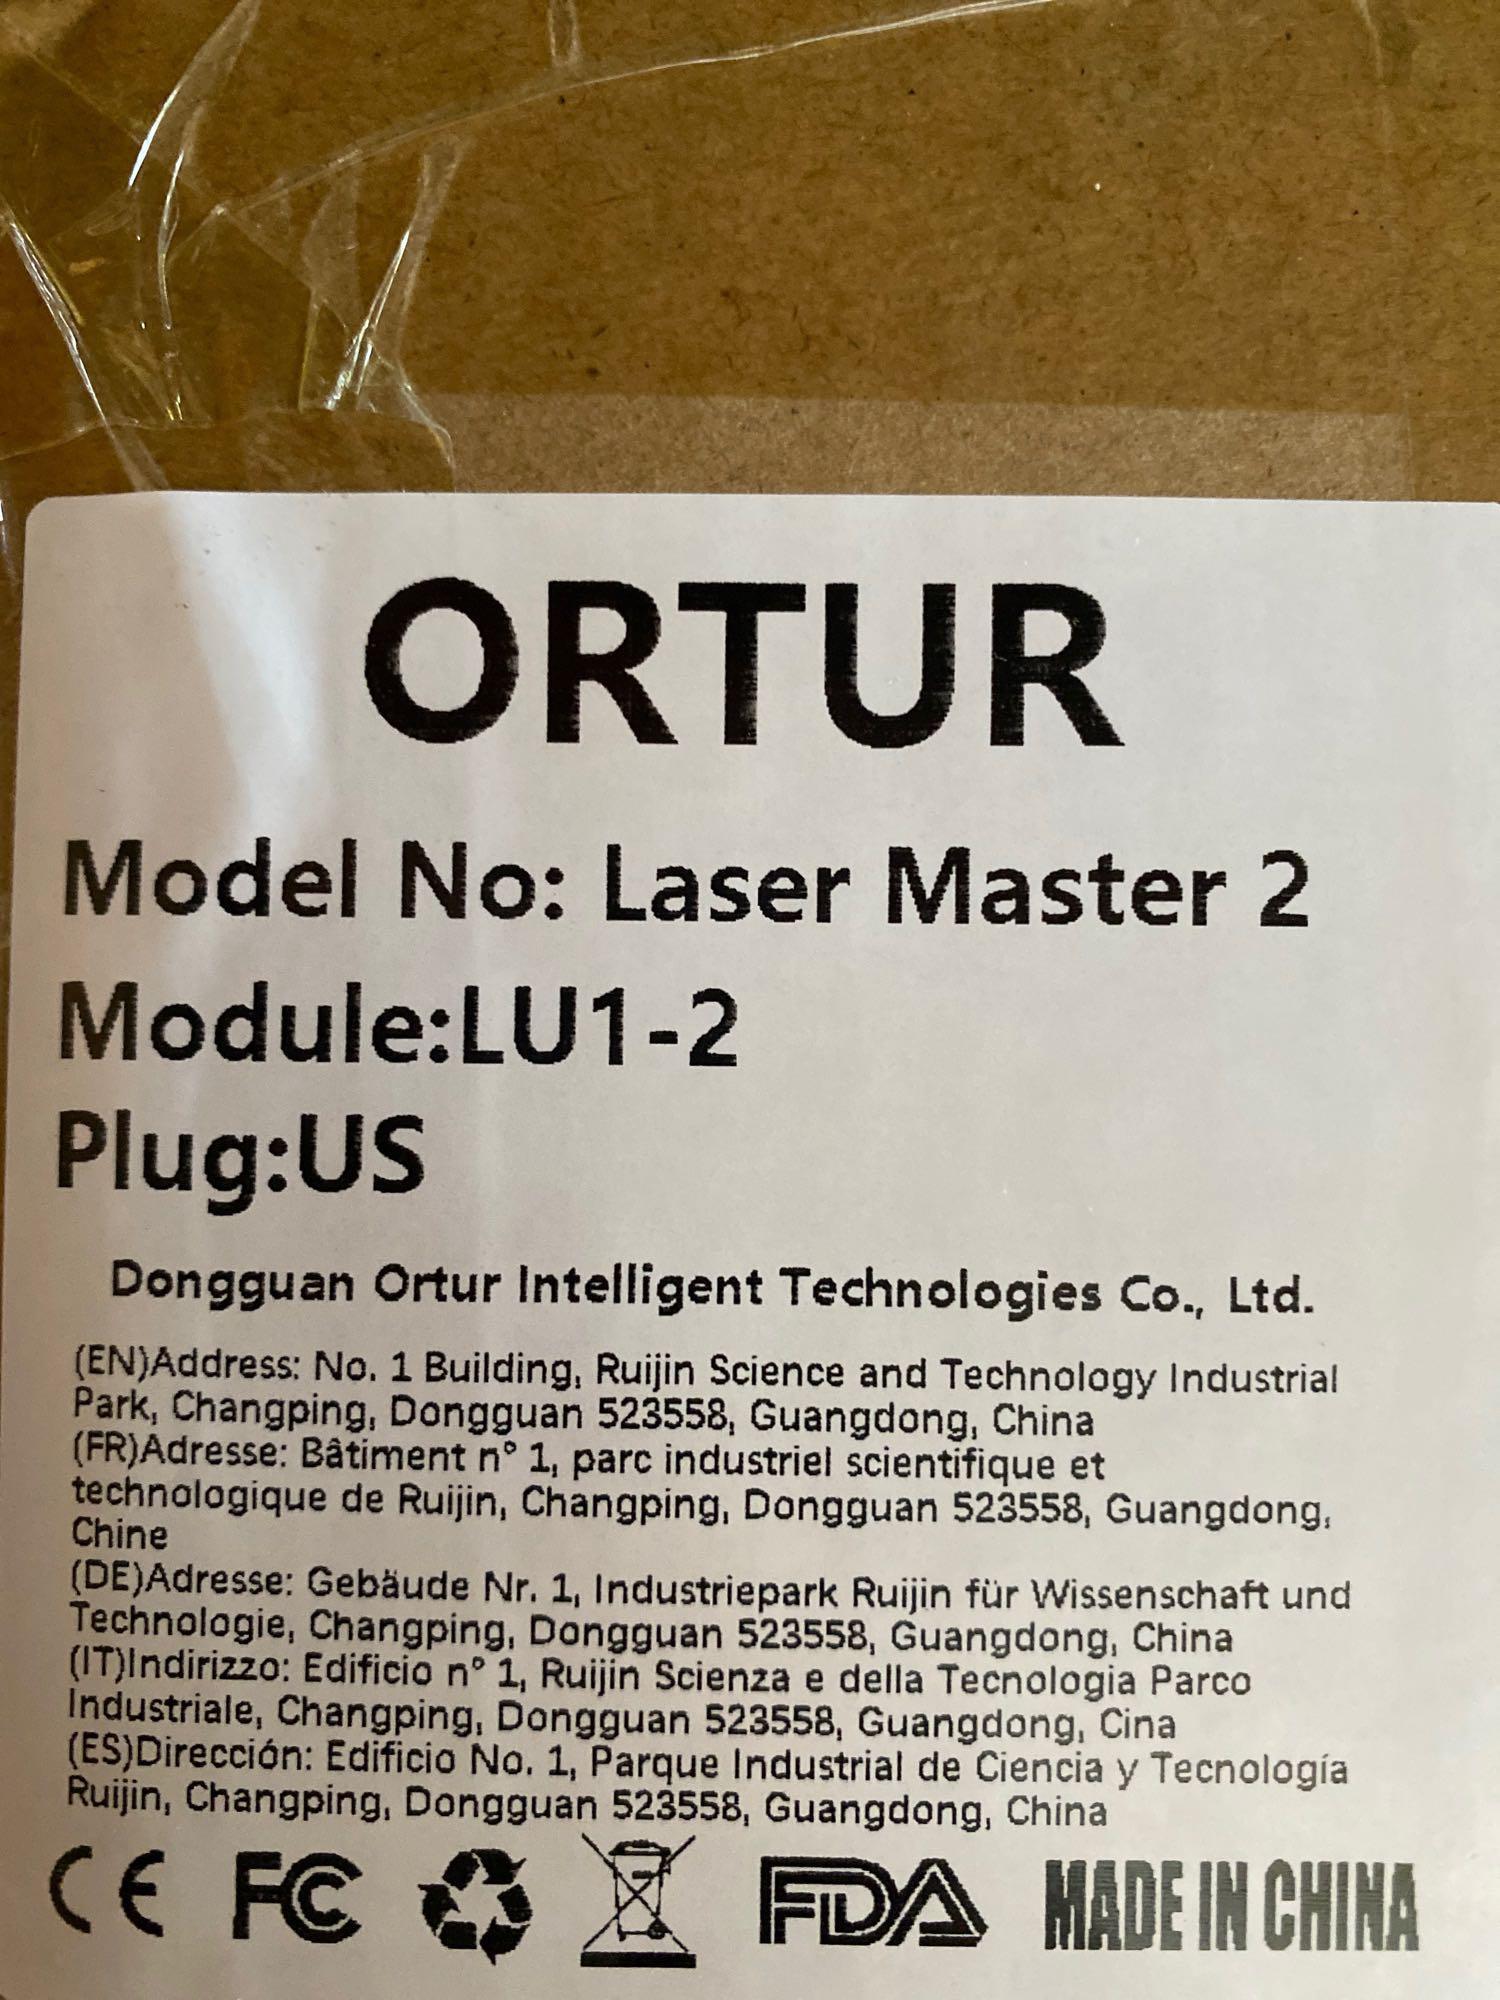 ORTUR Laser Master 2, Laser Engraver CNC, Laser Engraving Cutting Machine, $269.99 MSRP (BRAND NEW)